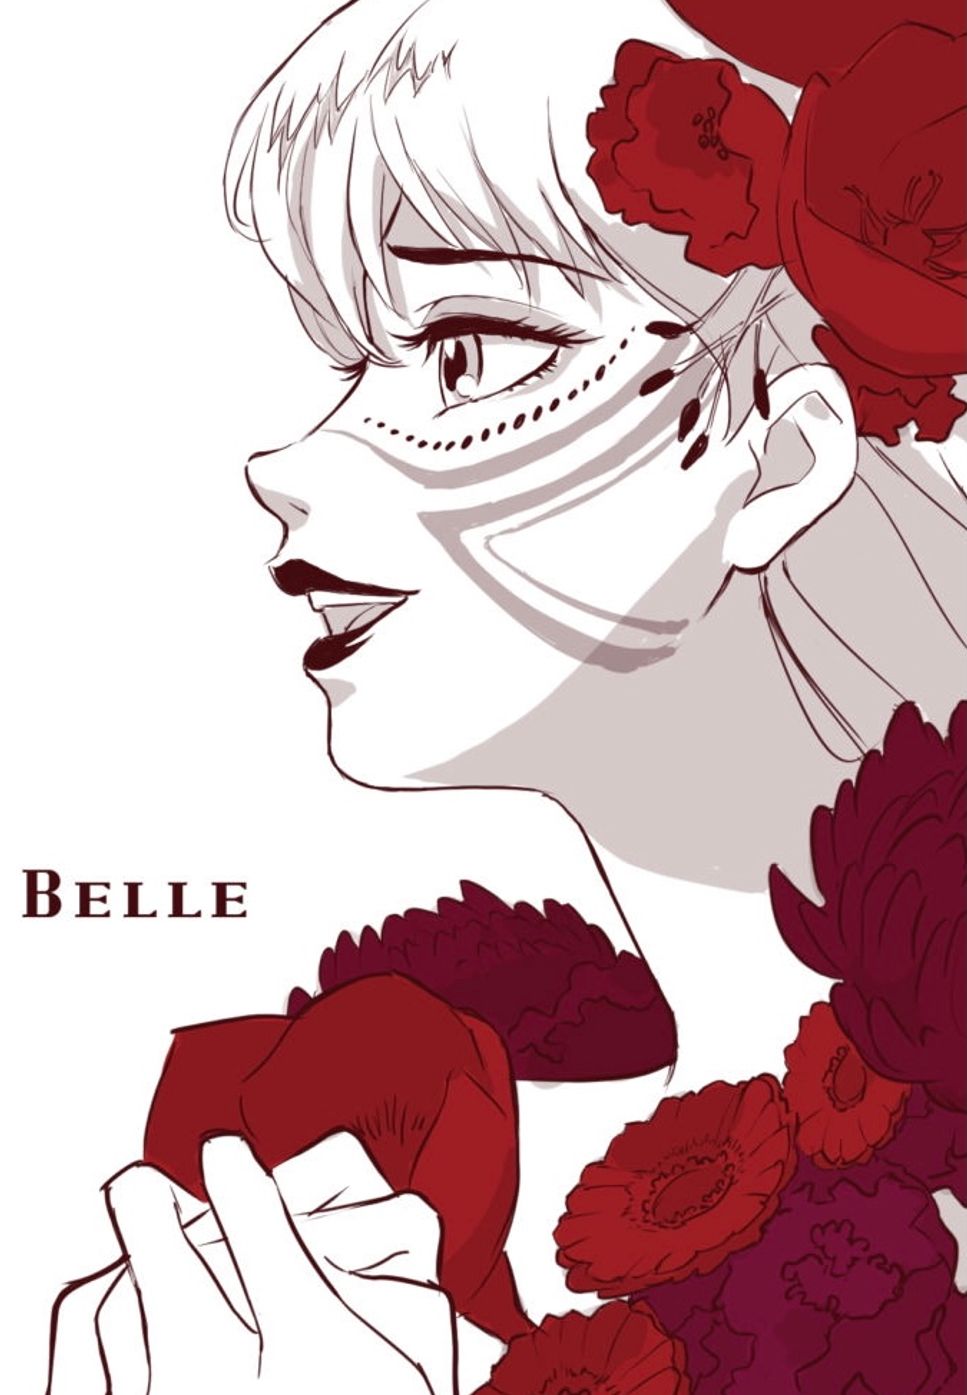 Belle - はなればなれの君へ(Full Version ) (ピアノソロ / 中上級 / 歌詞・コードあり / 『竜とそばかすの姫』劇中歌) by ena